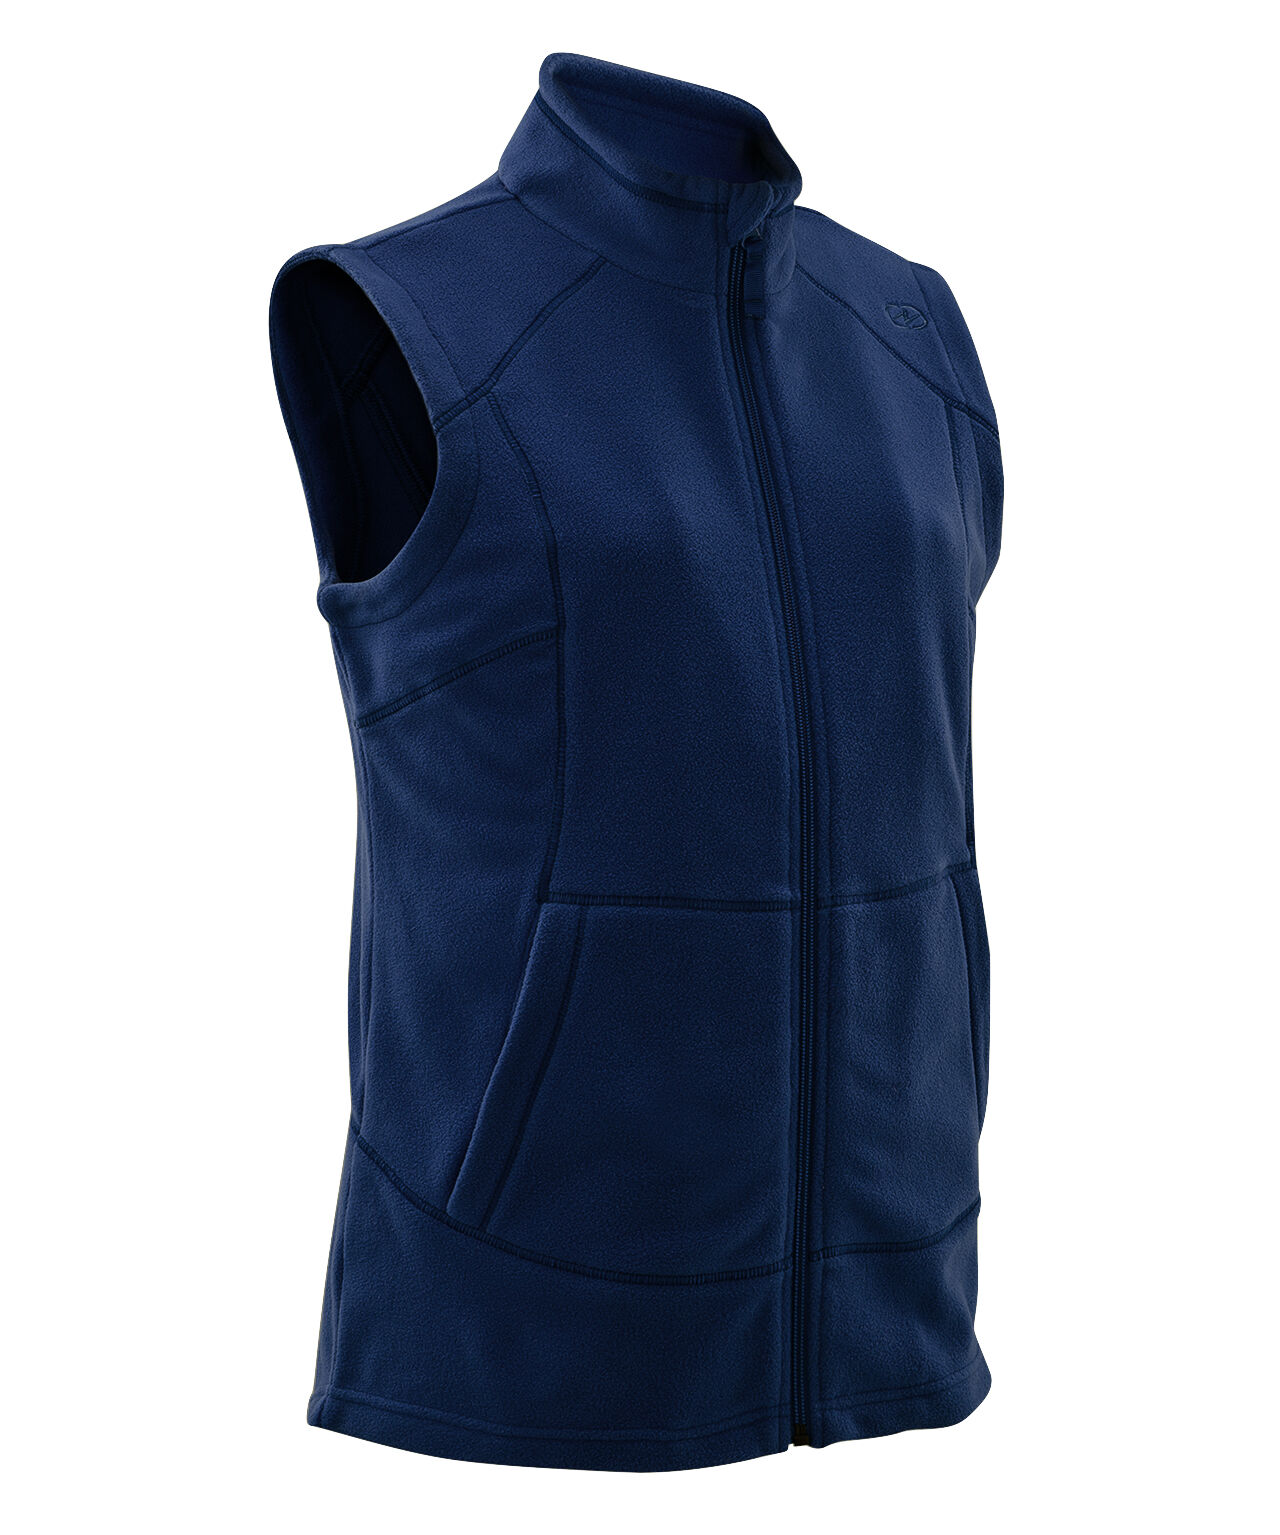 Damart Sport - Activ fleece 200 - Fleece jacket - Women's